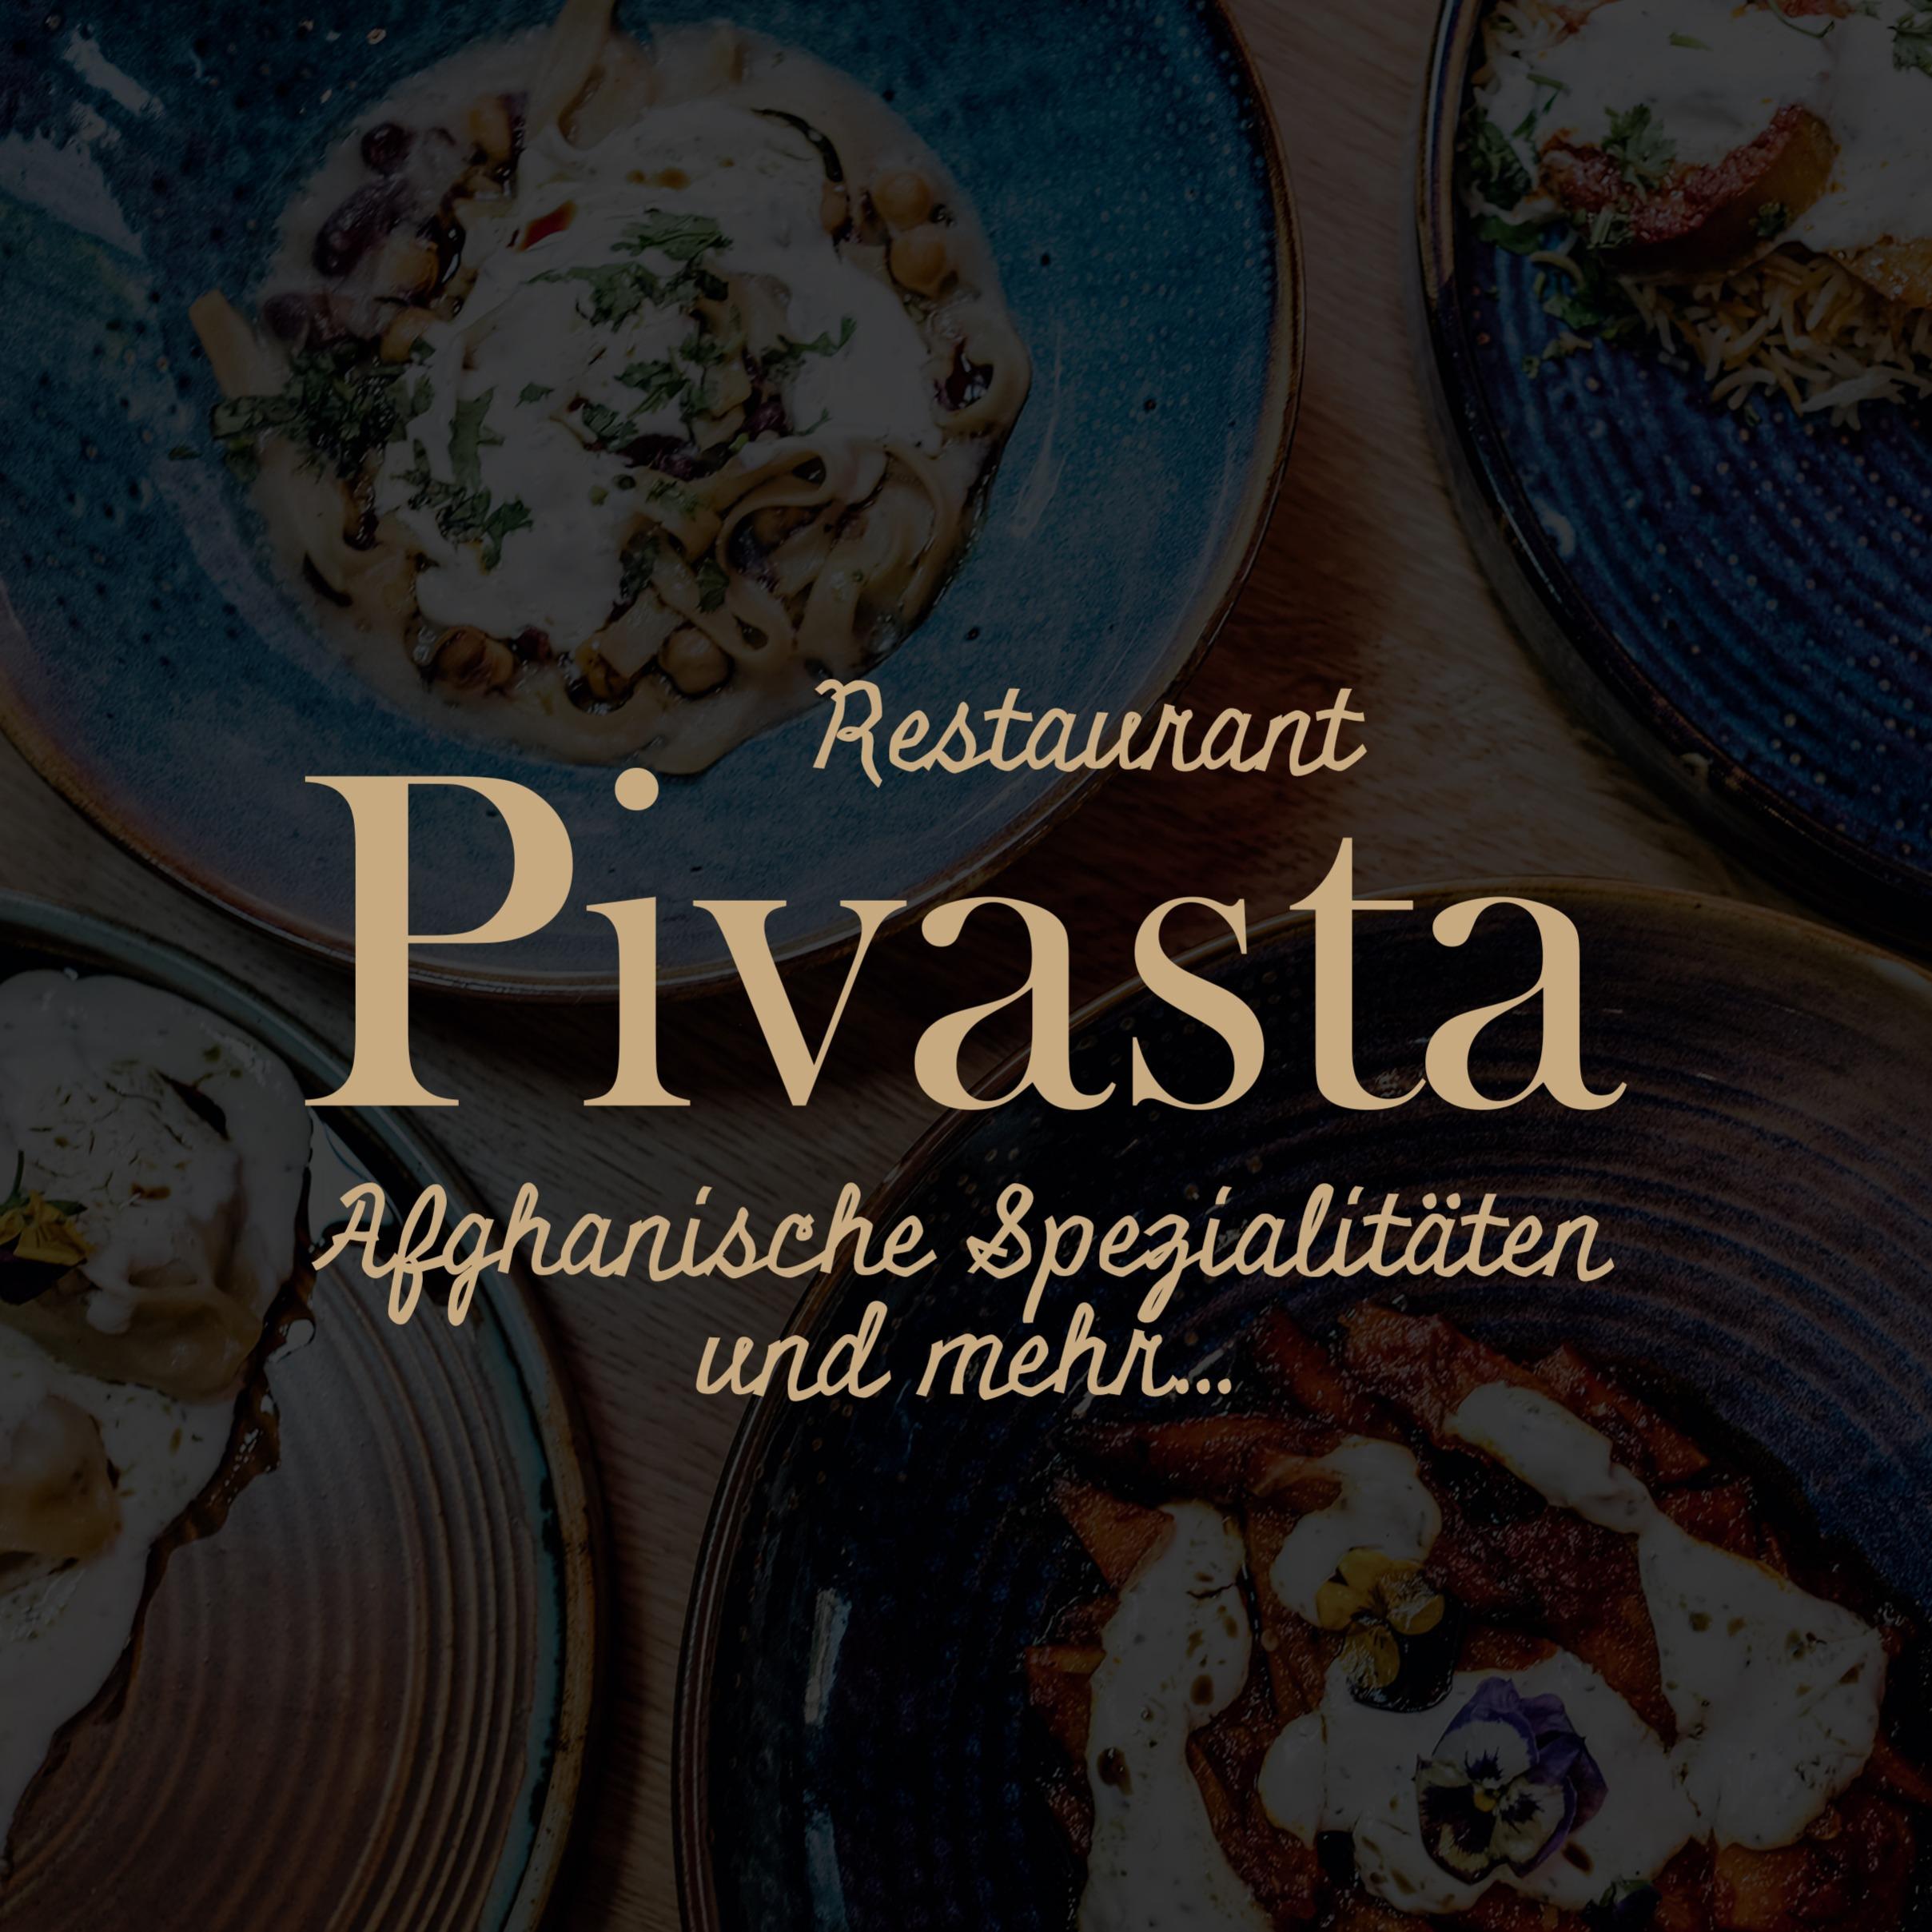 Afghanisches Restaurant Pivasta München  